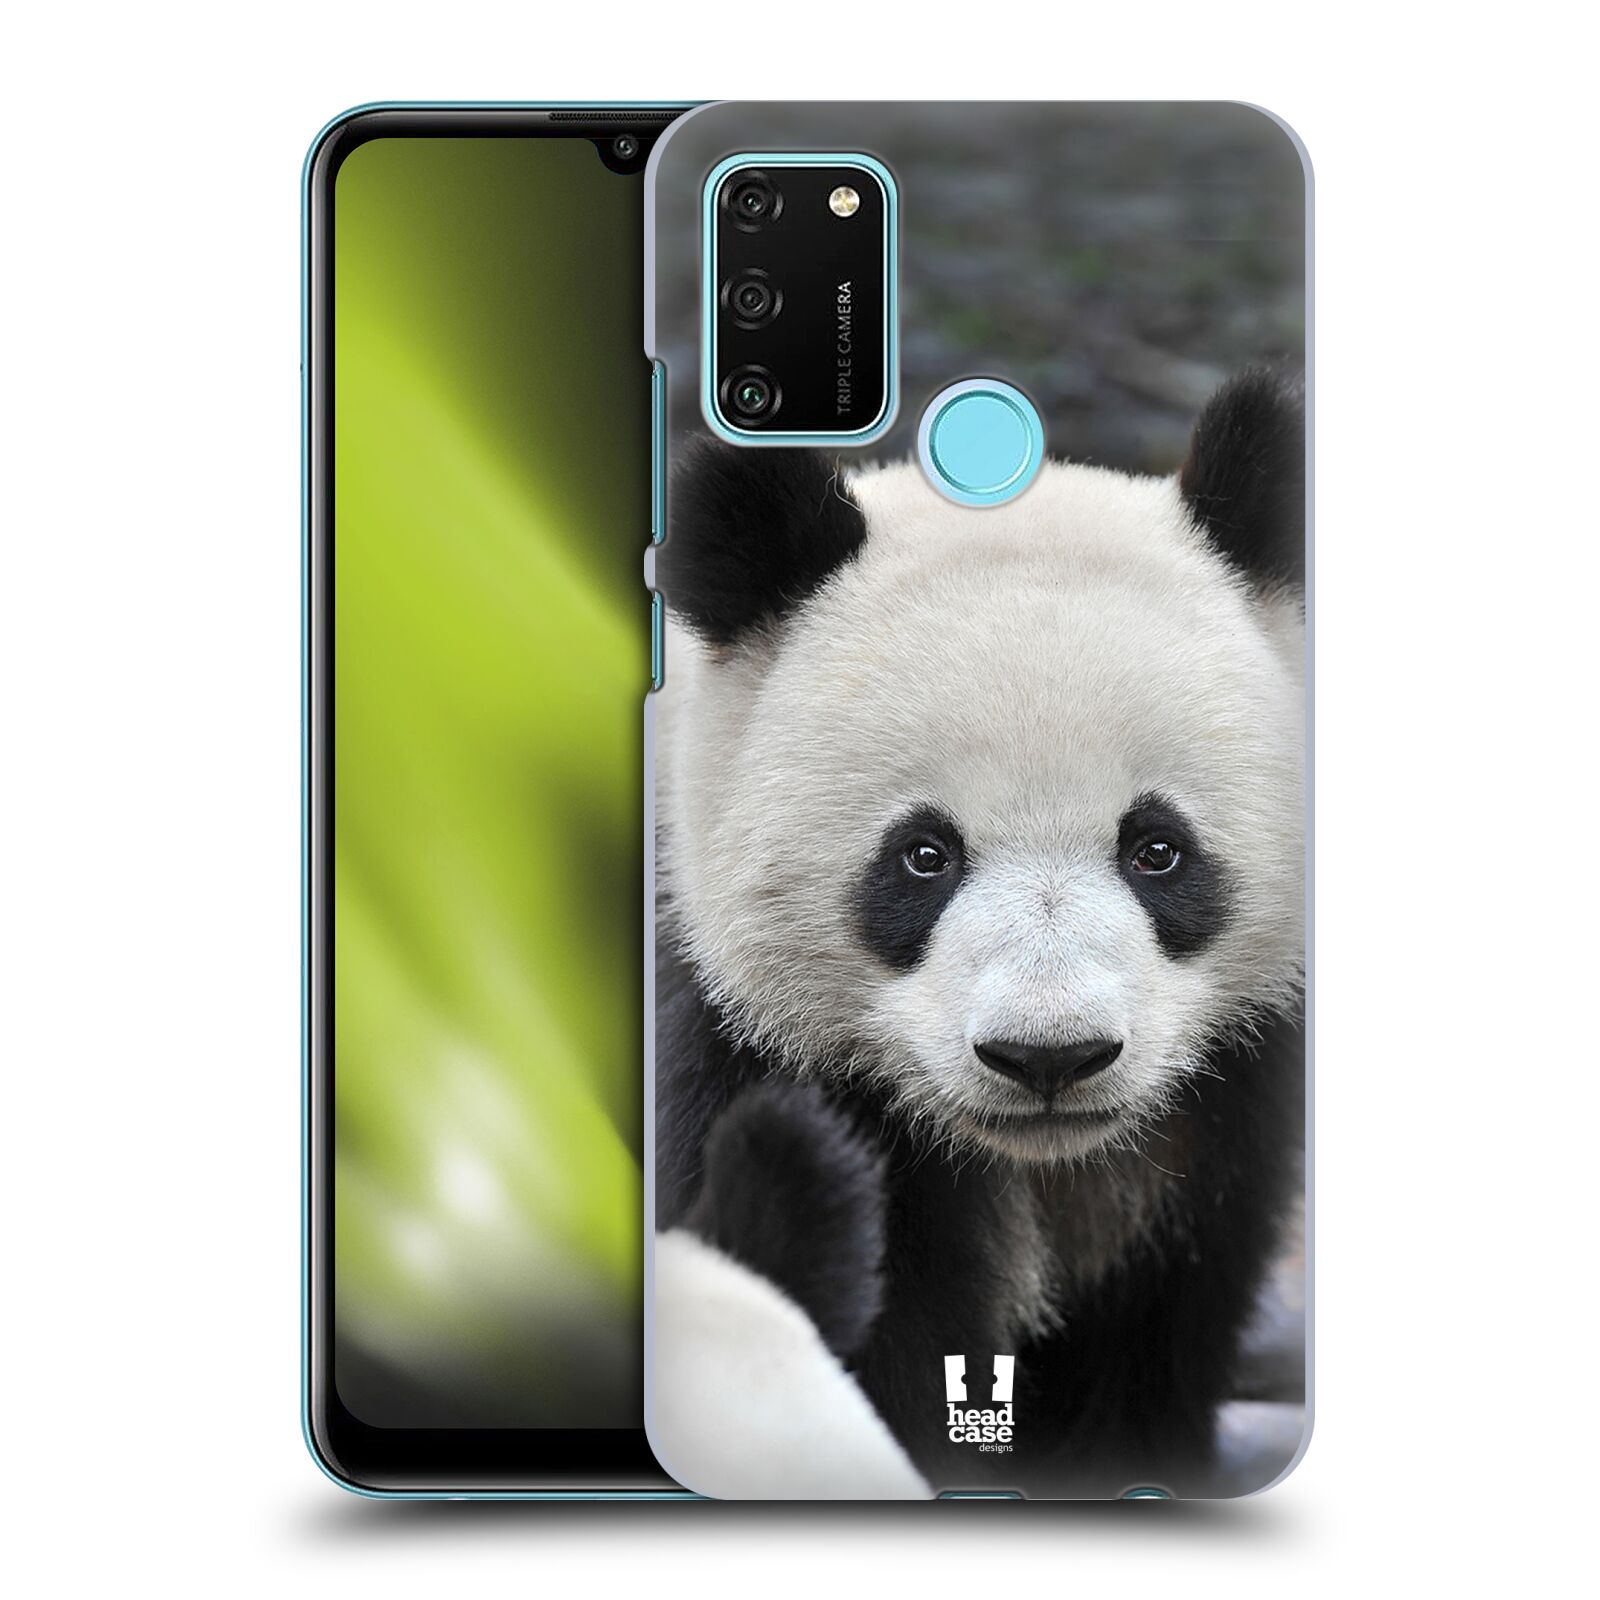 Zadní obal pro mobil Honor 9A - HEAD CASE - Svět zvířat medvěd panda